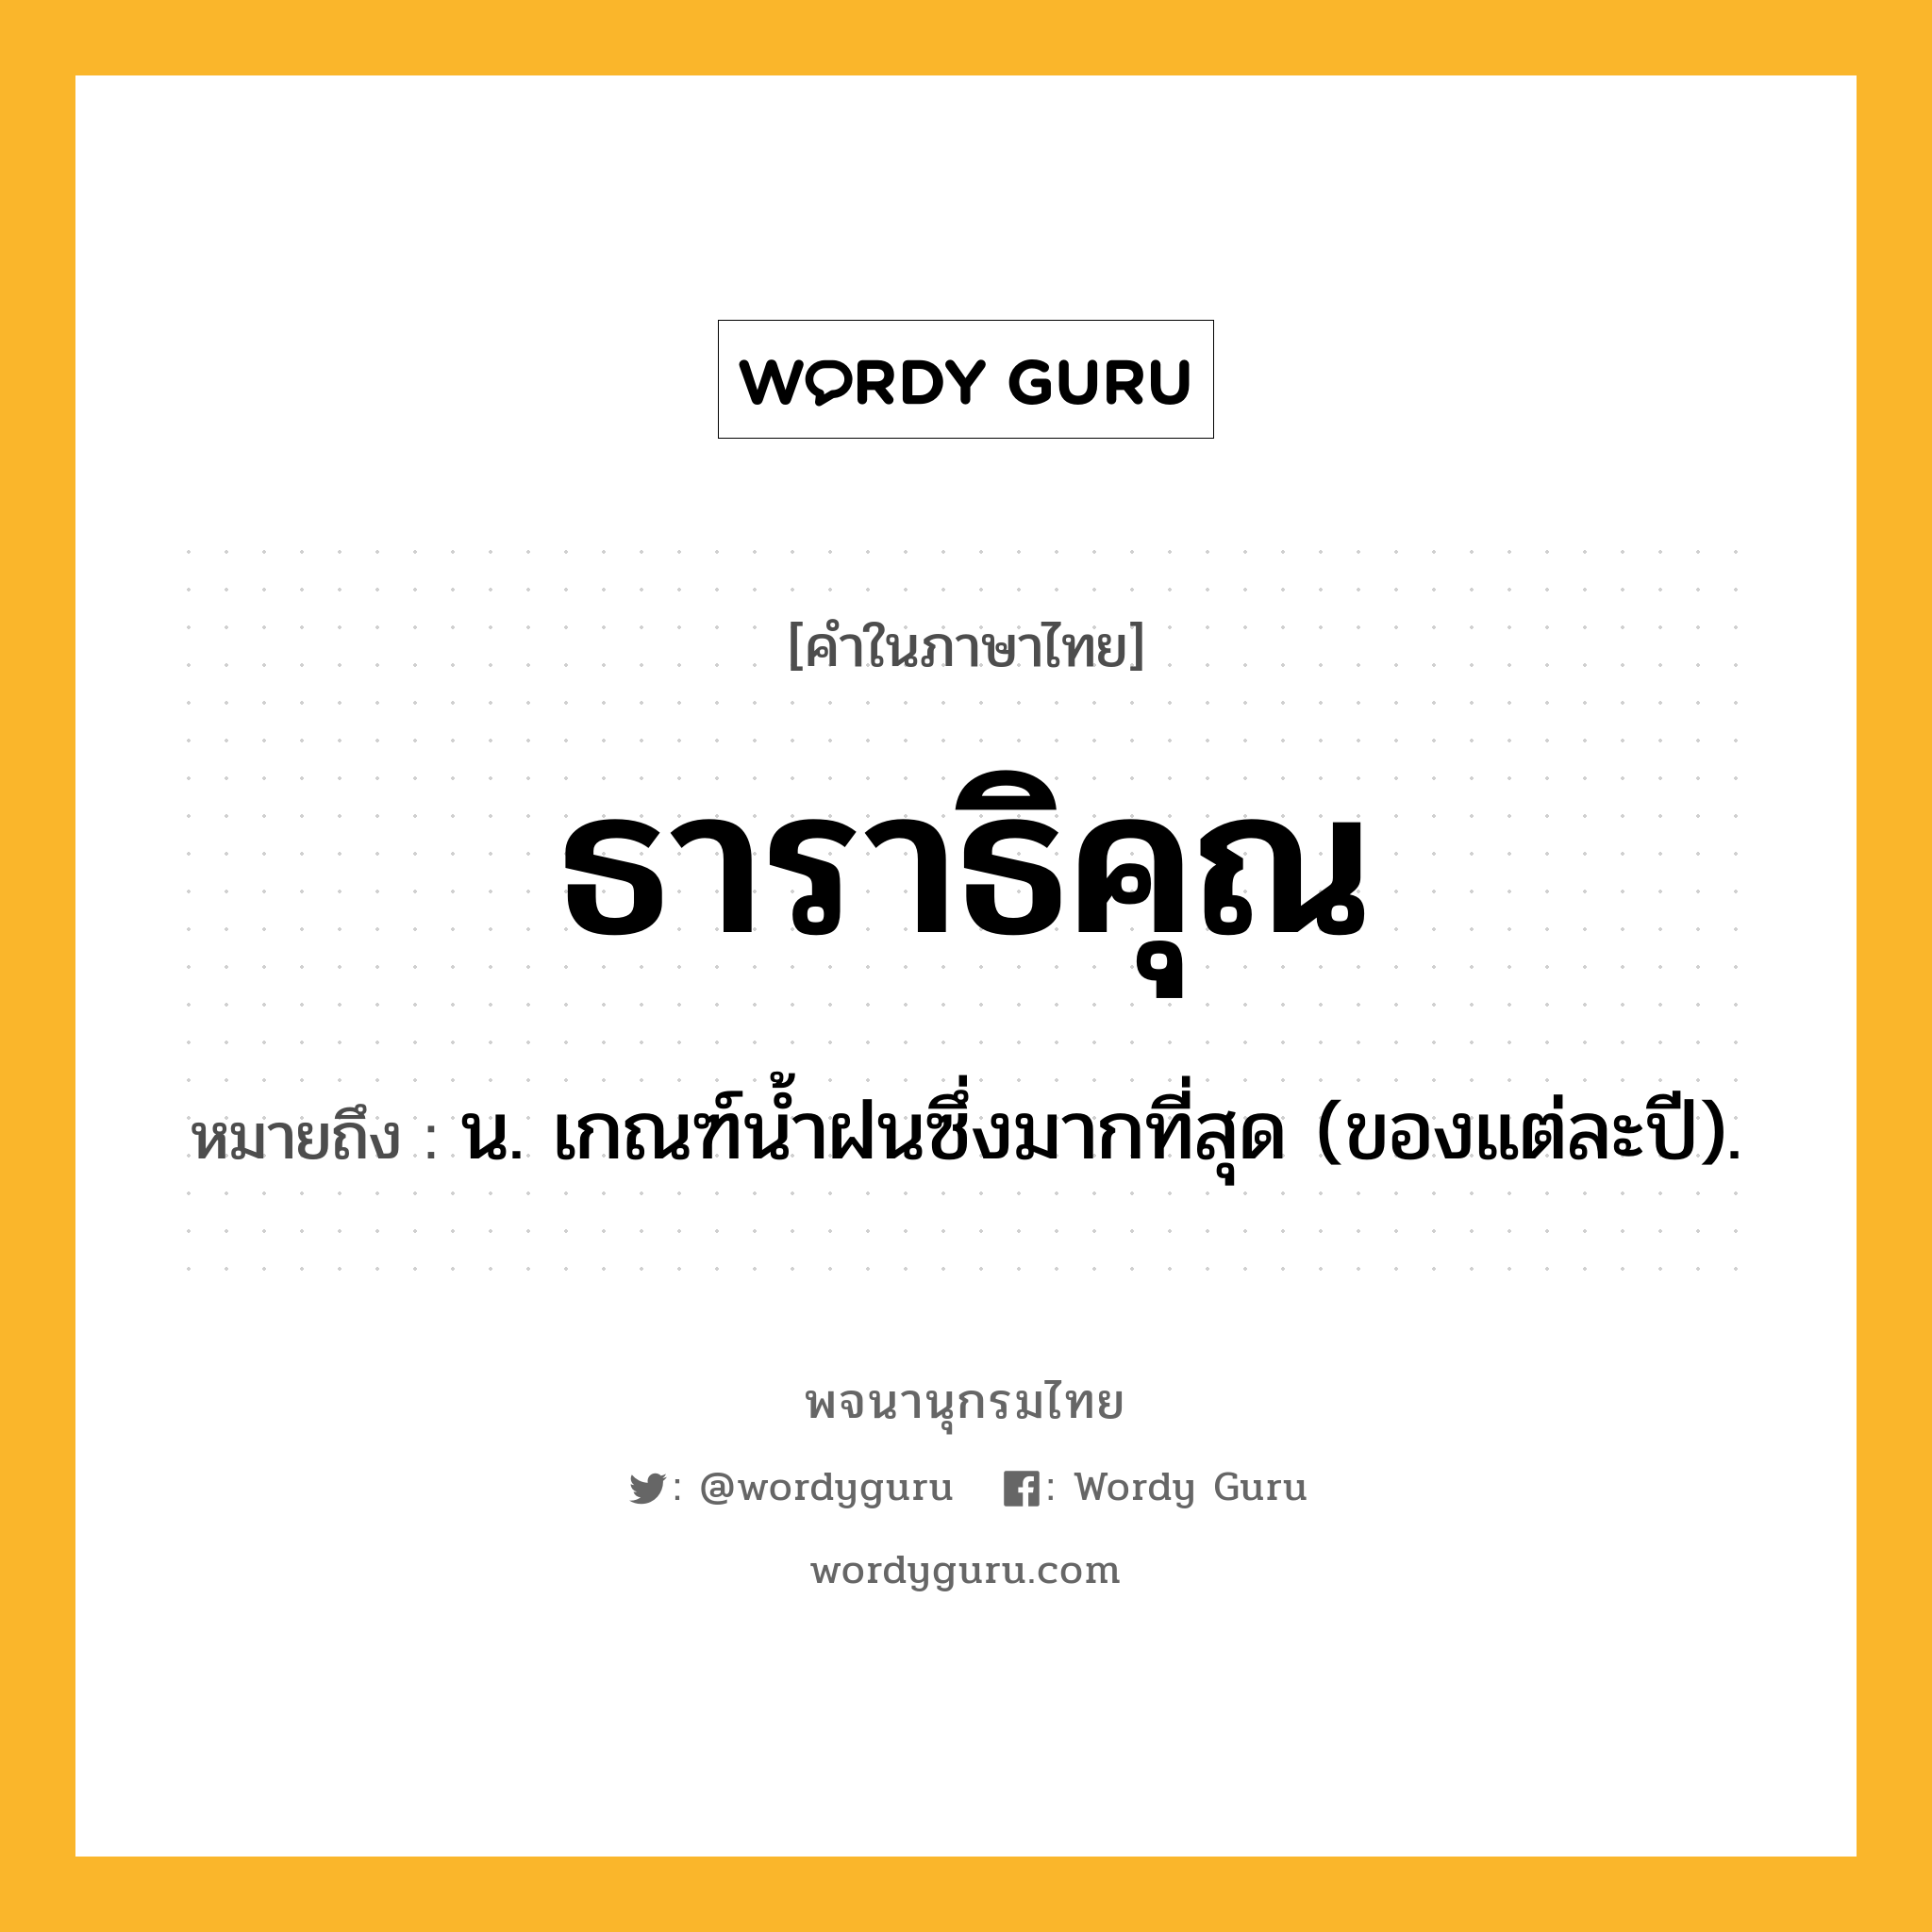 ธาราธิคุณ หมายถึงอะไร?, คำในภาษาไทย ธาราธิคุณ หมายถึง น. เกณฑ์นํ้าฝนซึ่งมากที่สุด (ของแต่ละปี).